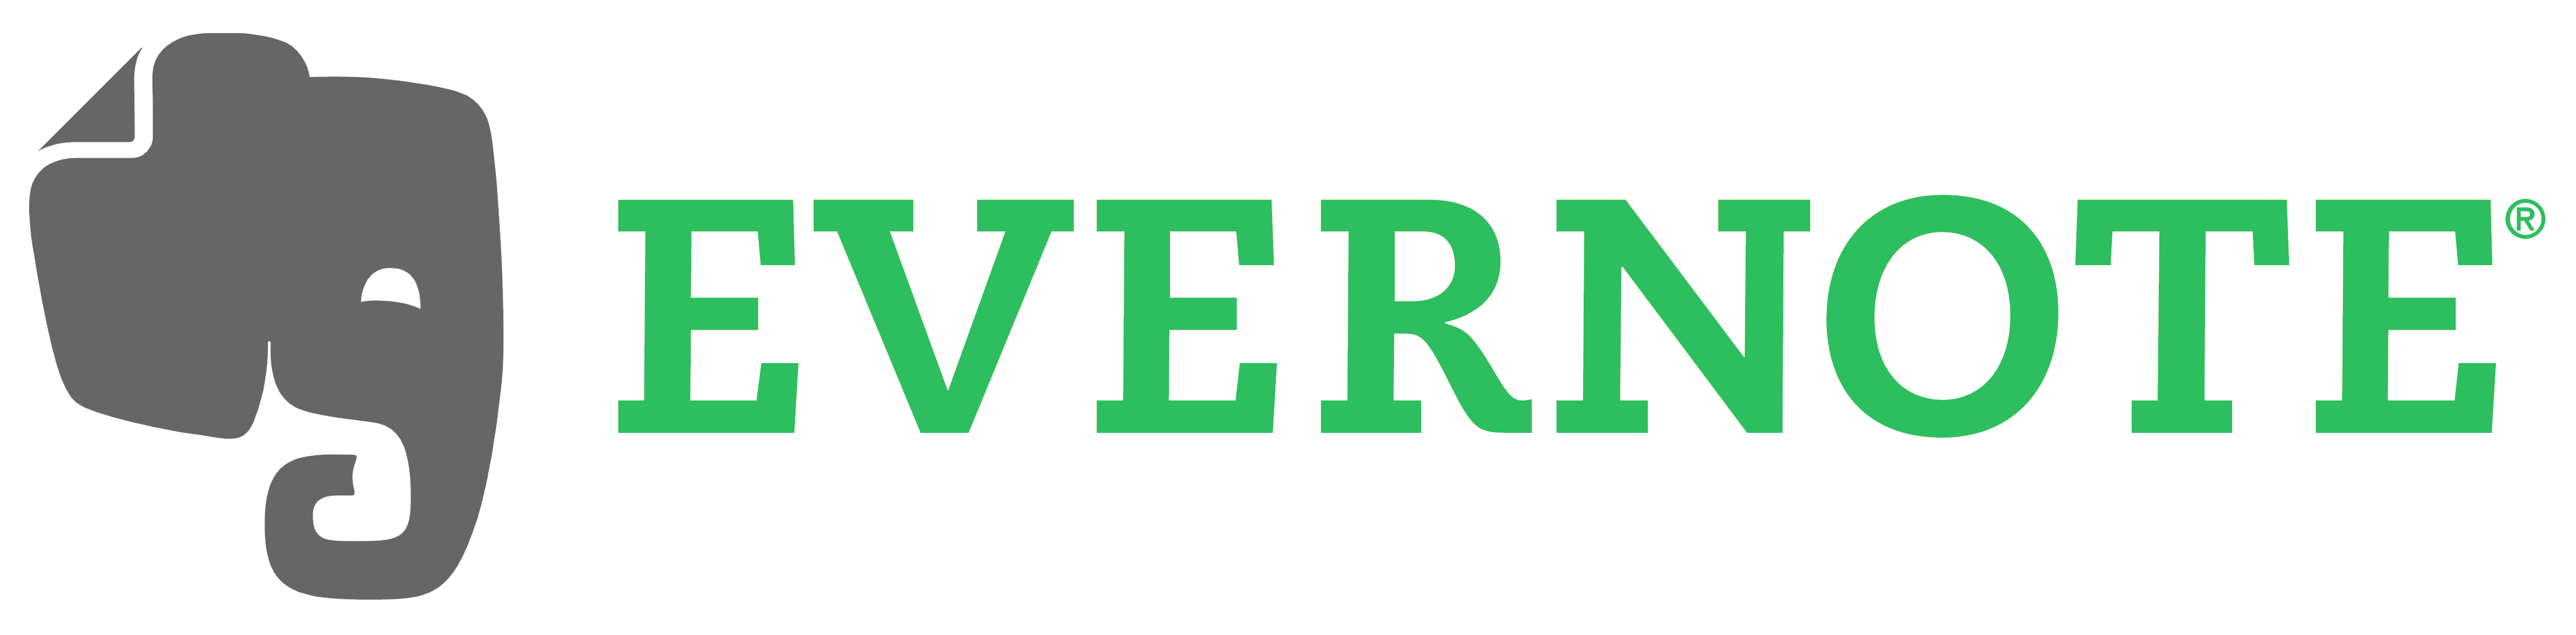 Evernote Logo - Evernote